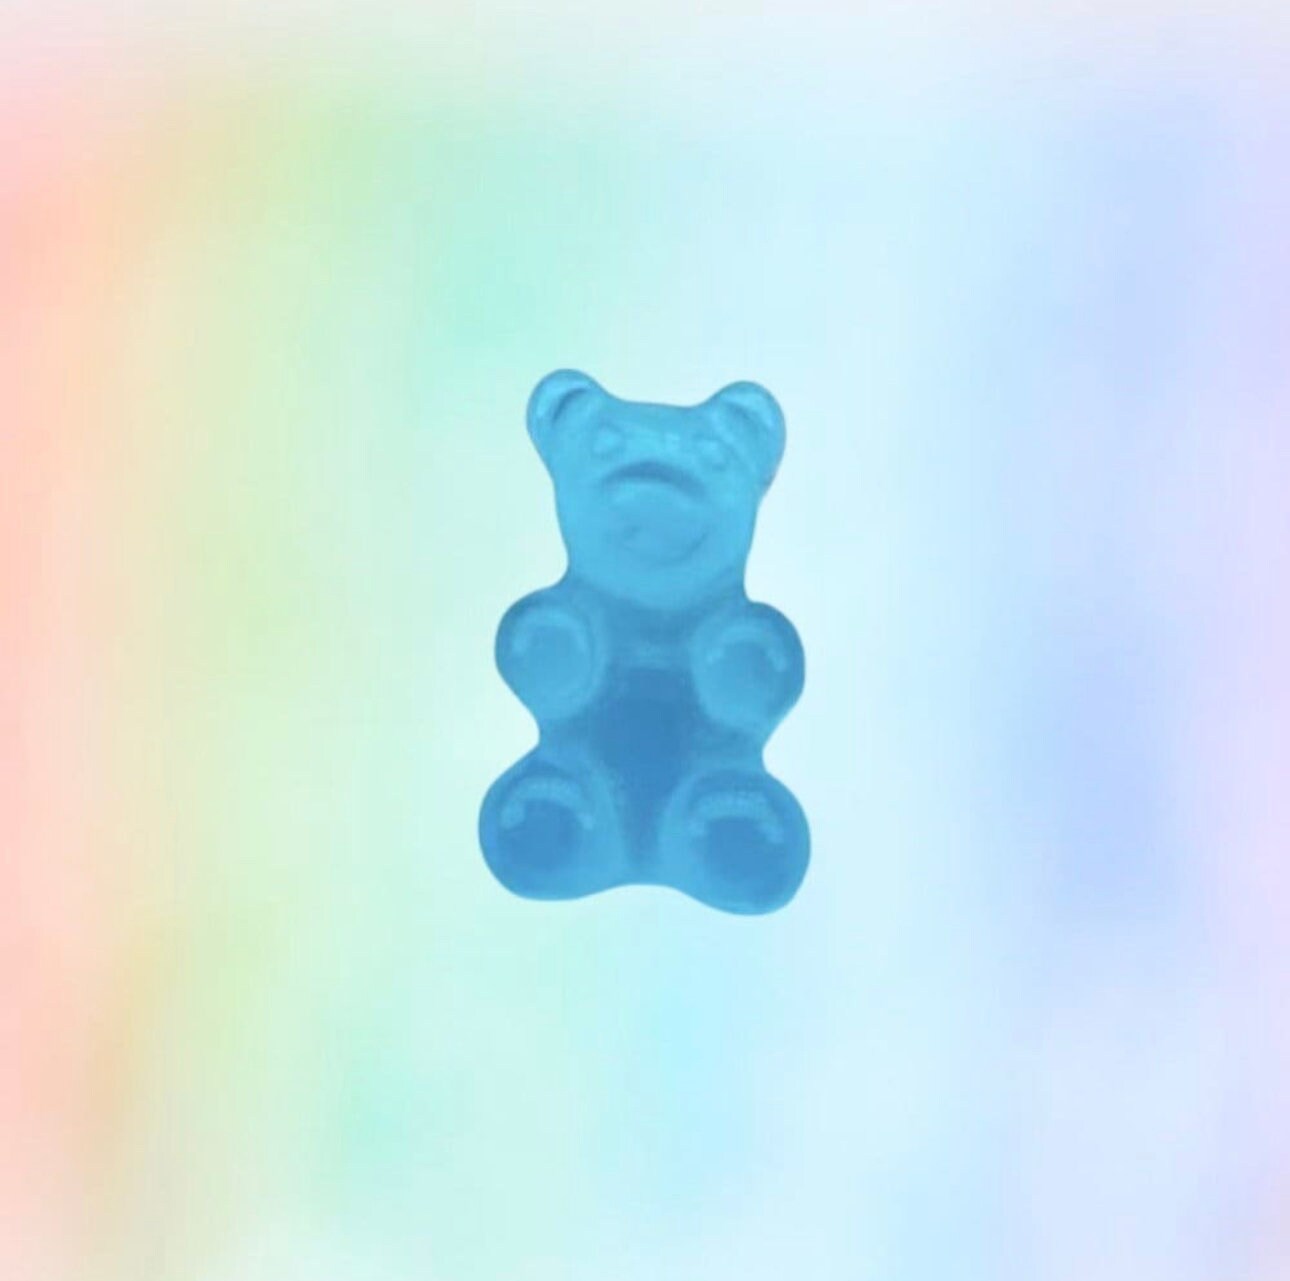 Gummy bear | shoe charms | rainbow bears | jelly resin | shoe charms | KAWAII | gummi bears | candy charms | 3D charms